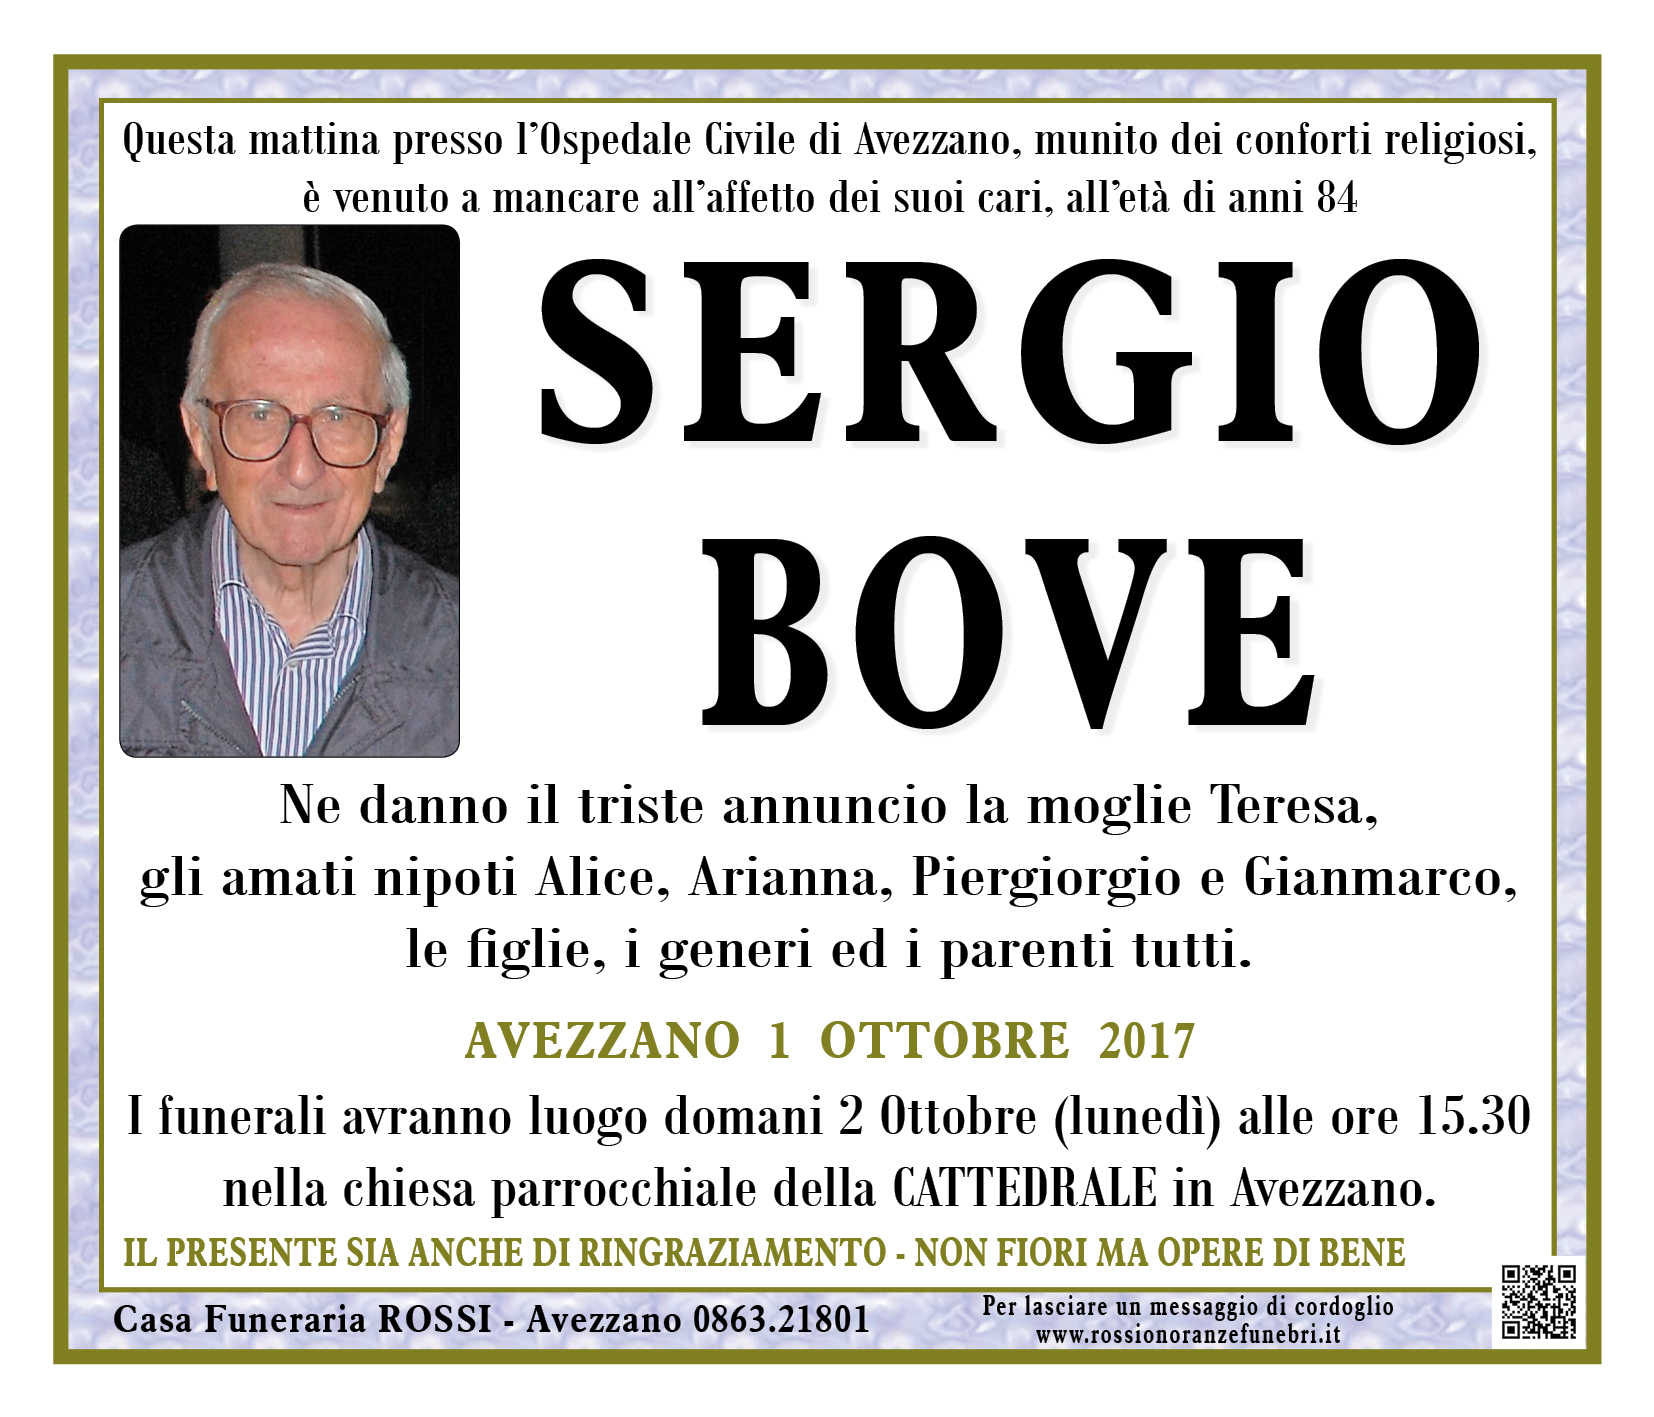 Sergio Bove